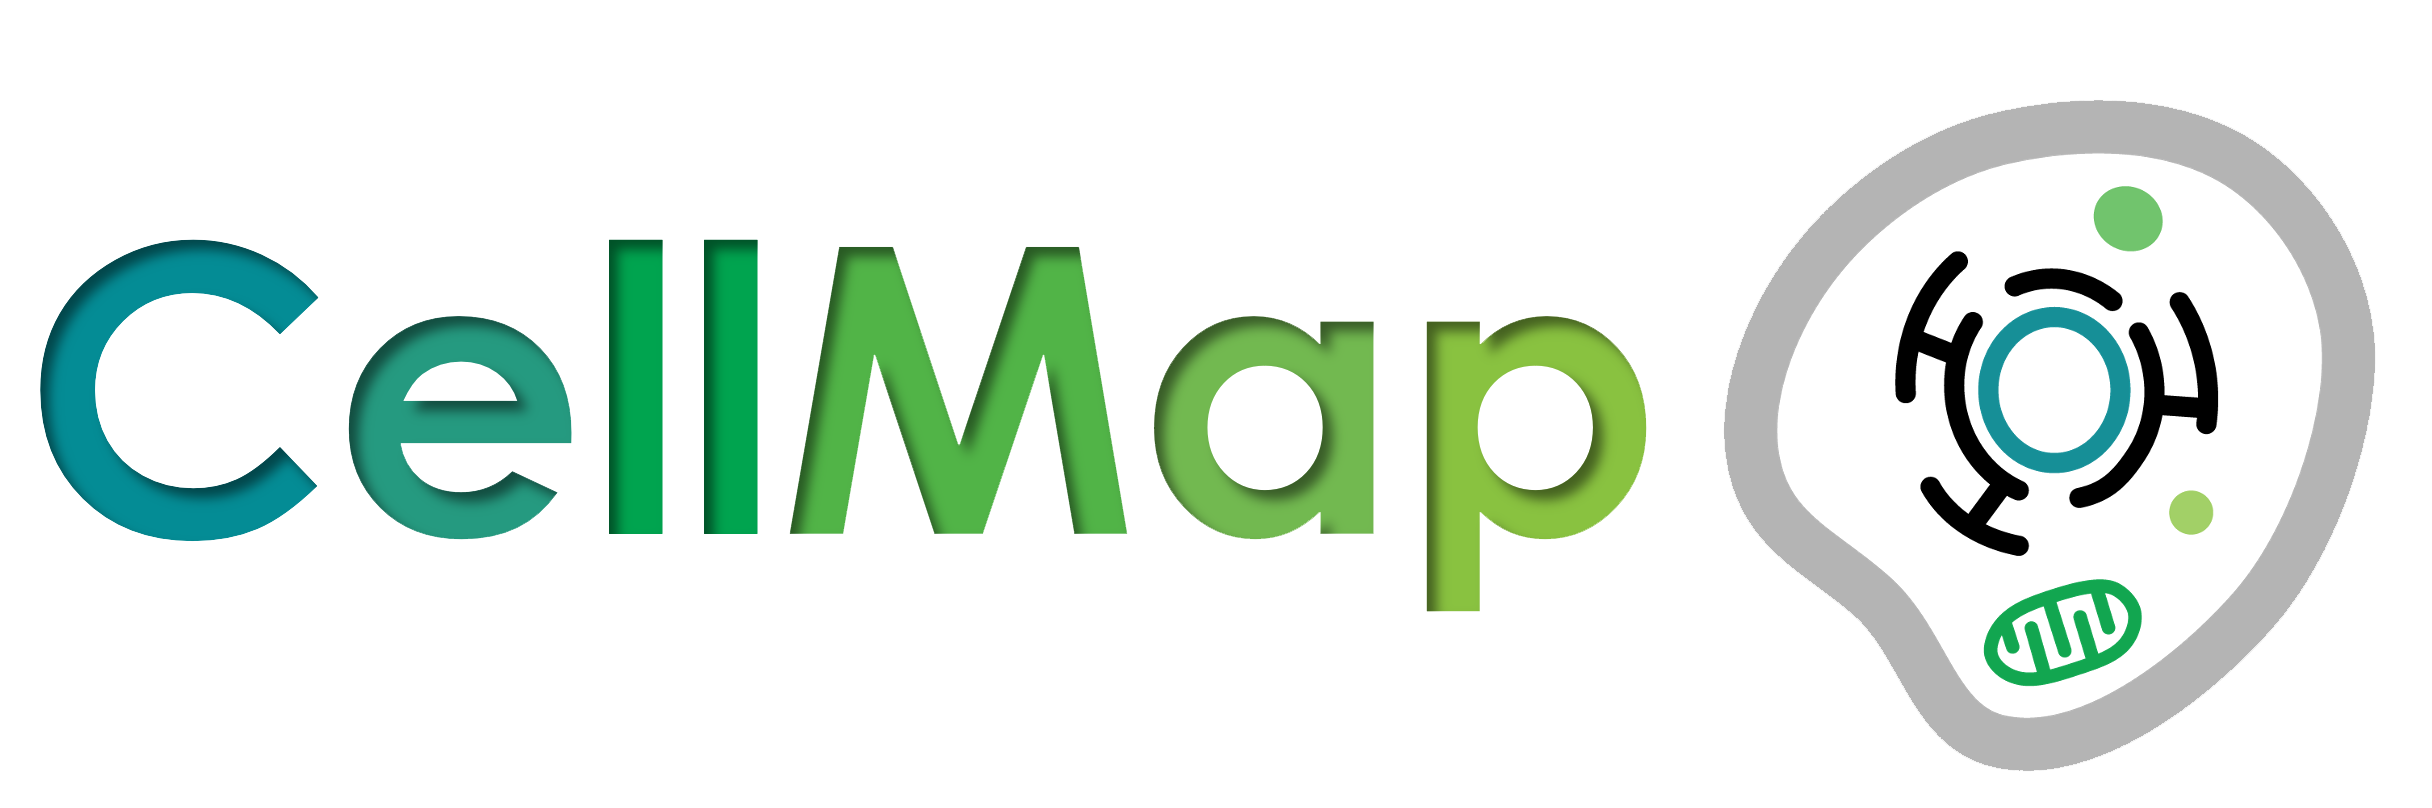 CellMap logo